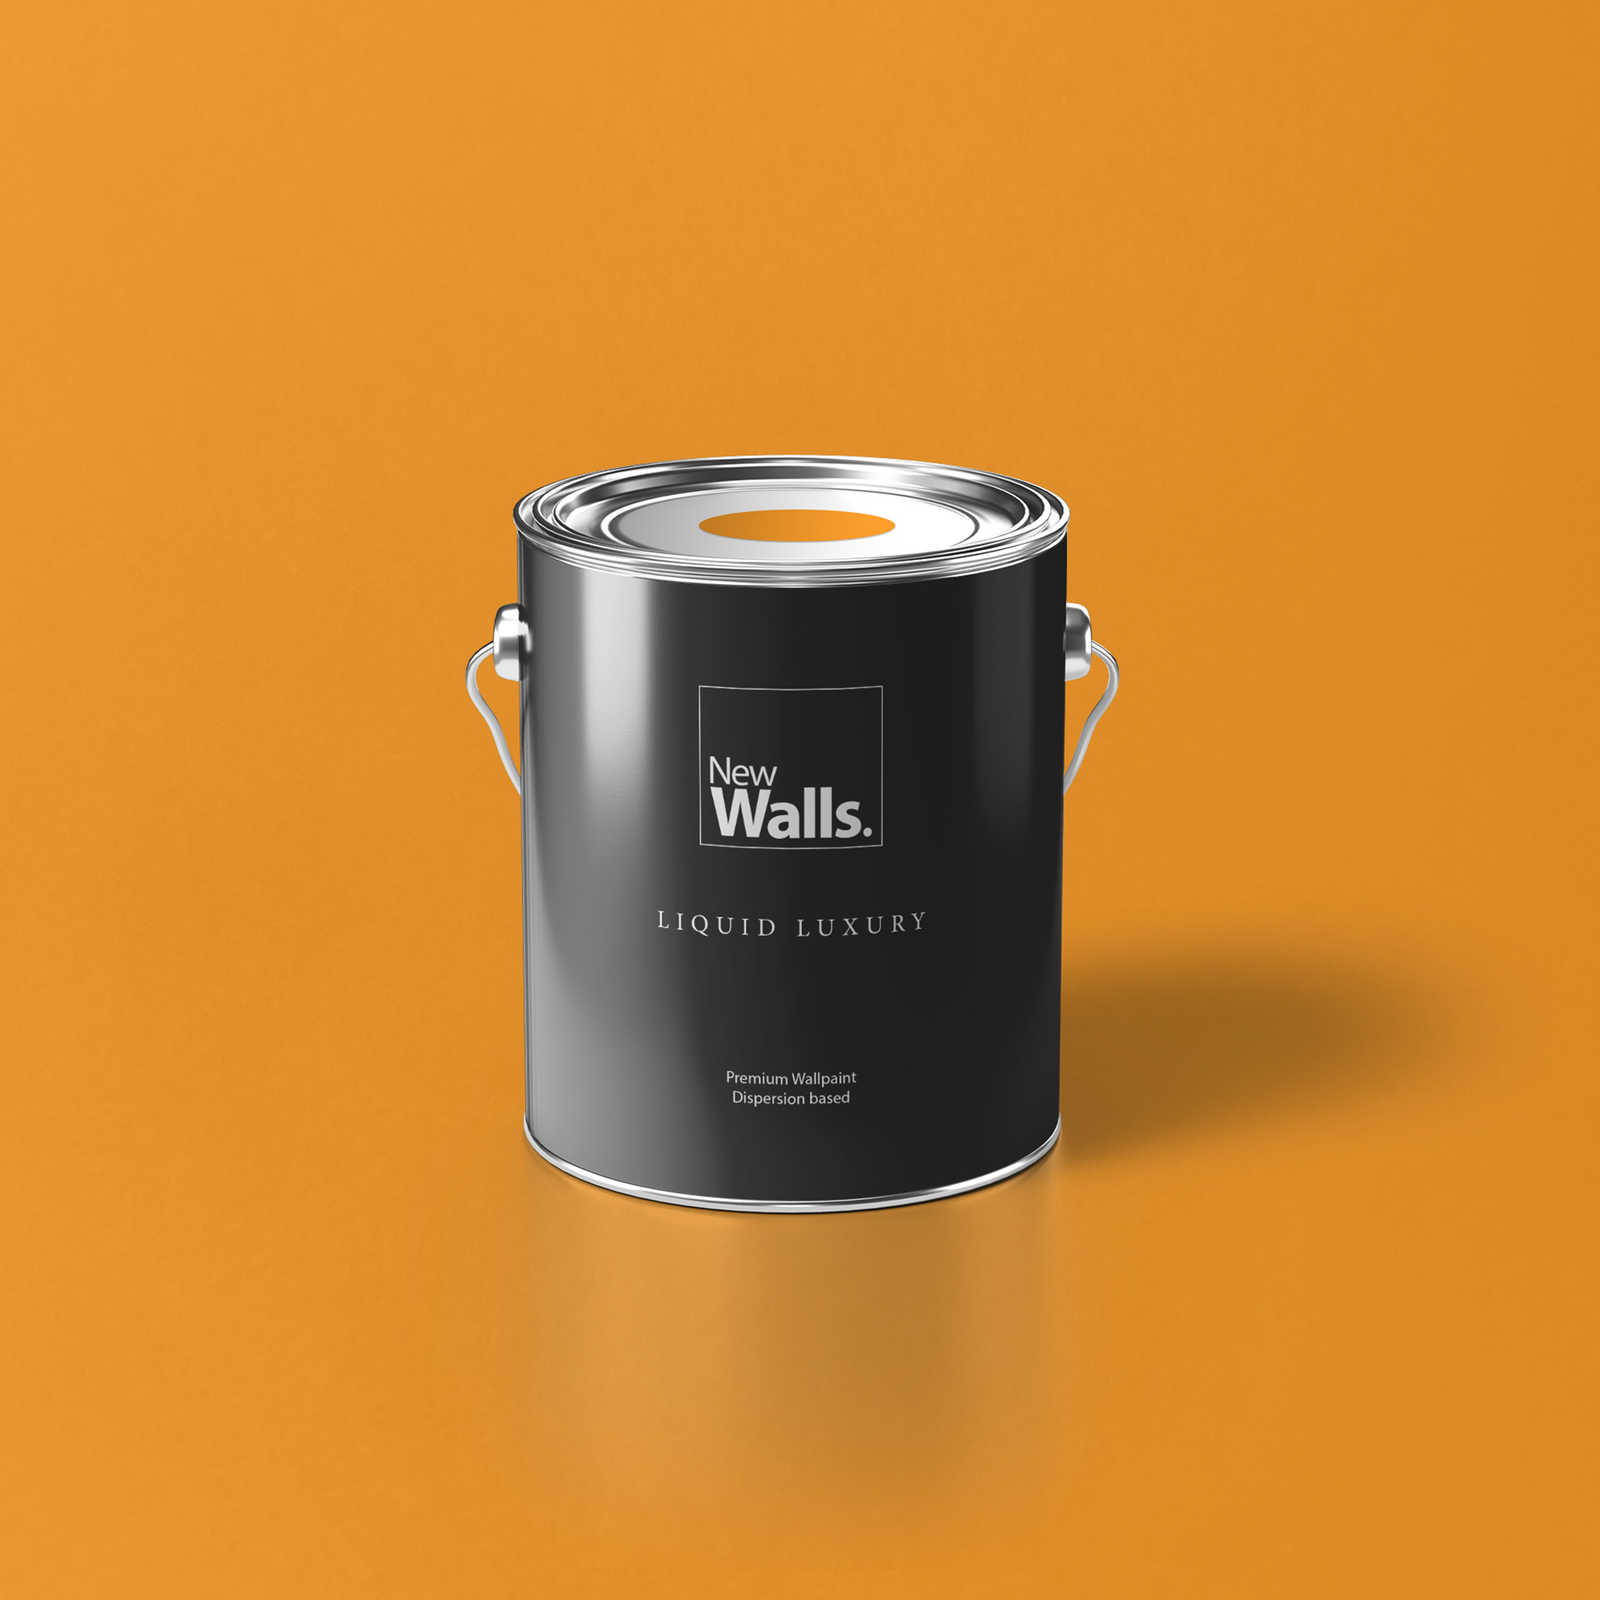 Premium Wall Paint Cheerful Honey Yellow »Juicy Yellow« NW807 – 2.5 litre
